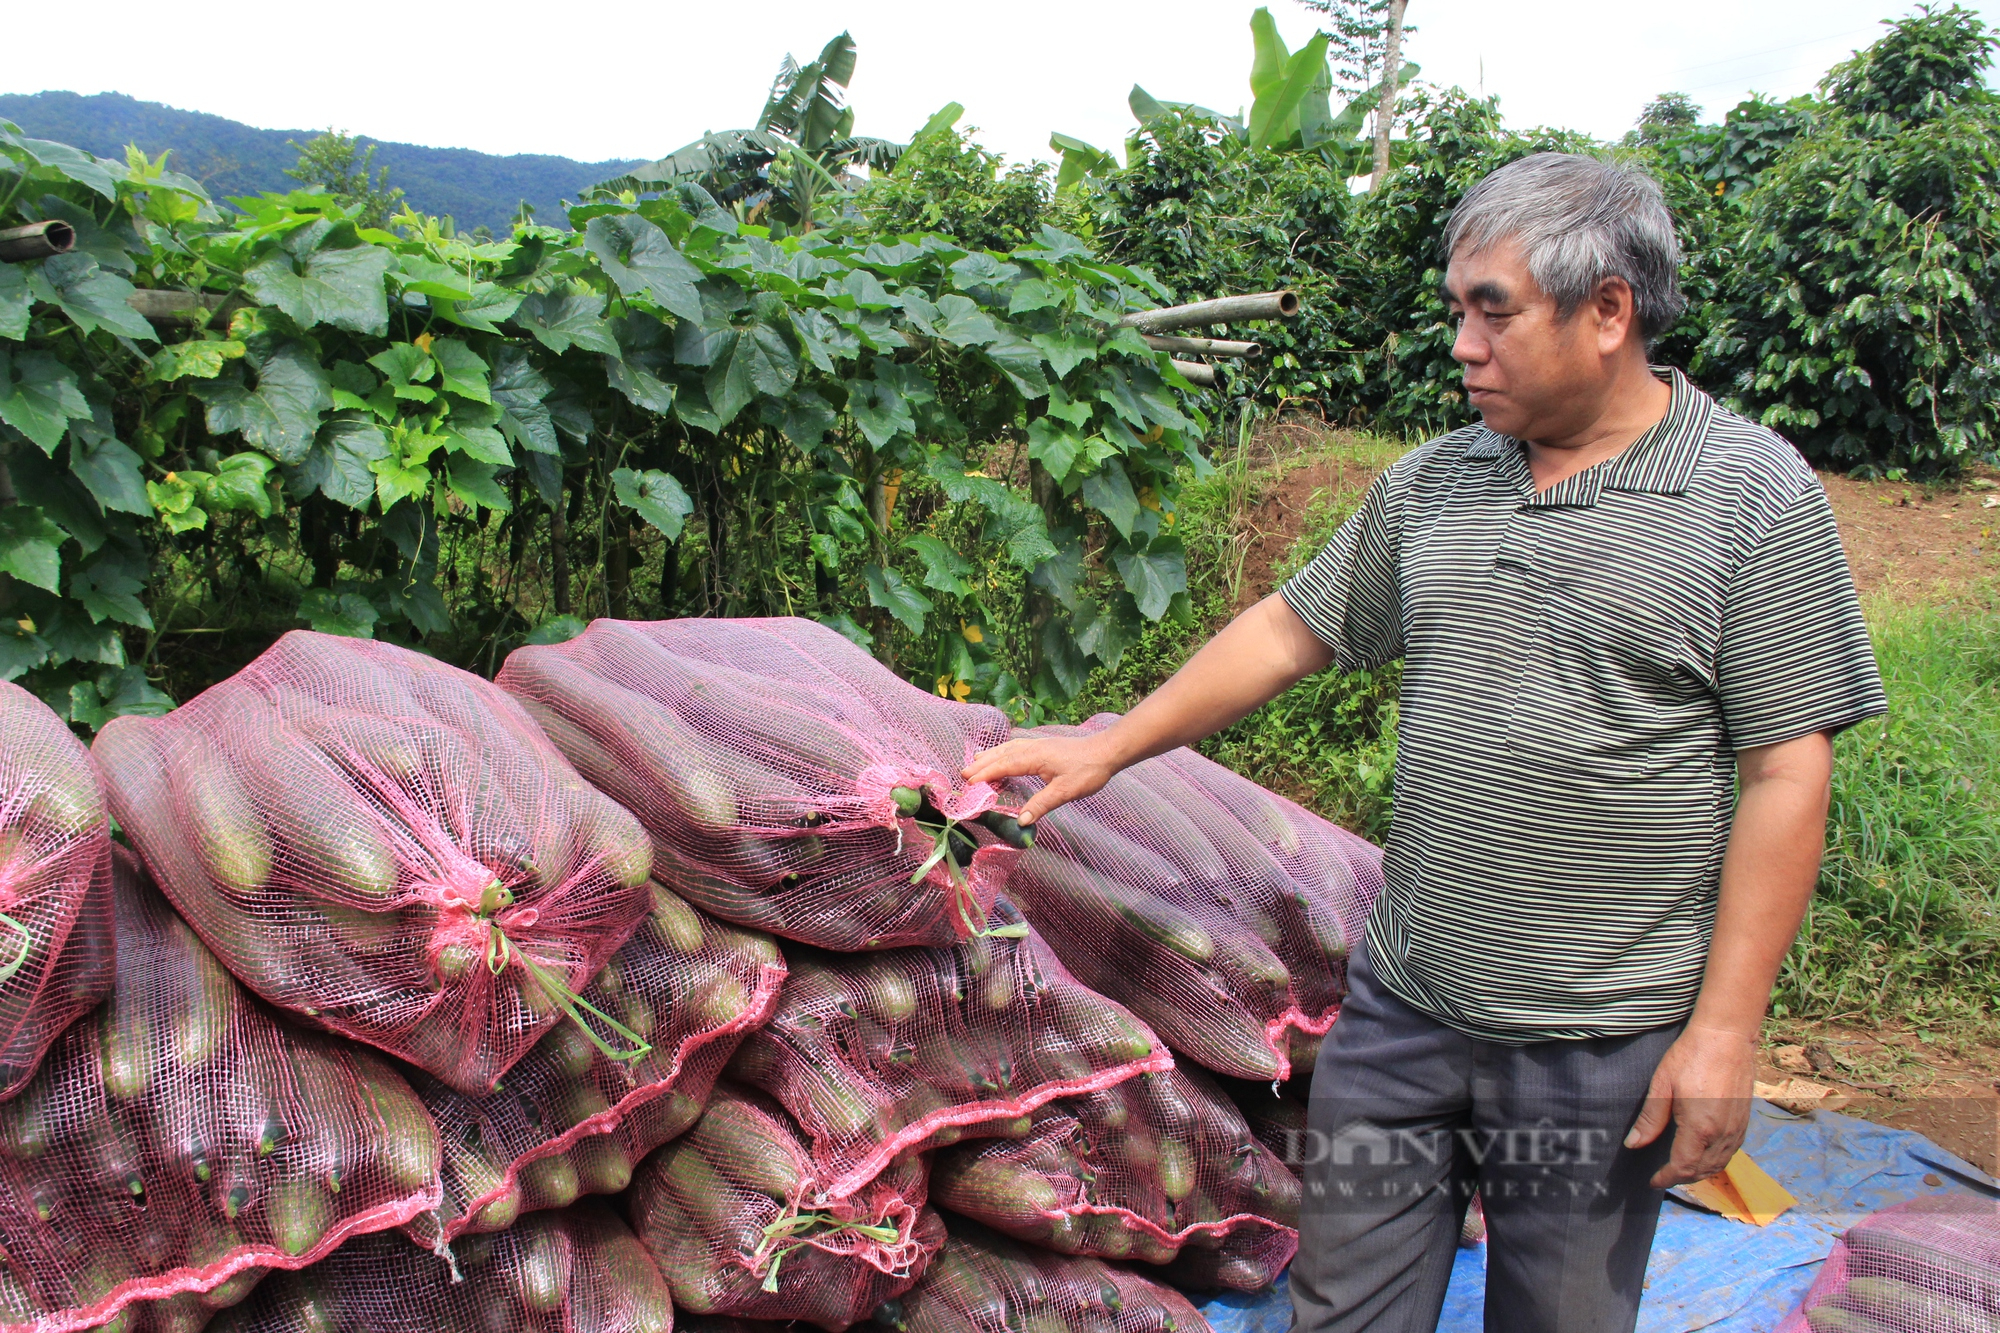 Nông dân ở Sơn La lãi hàng trăm triệu nhờ trồng rau quả liên kết với doanh nghiệp - Ảnh 3.